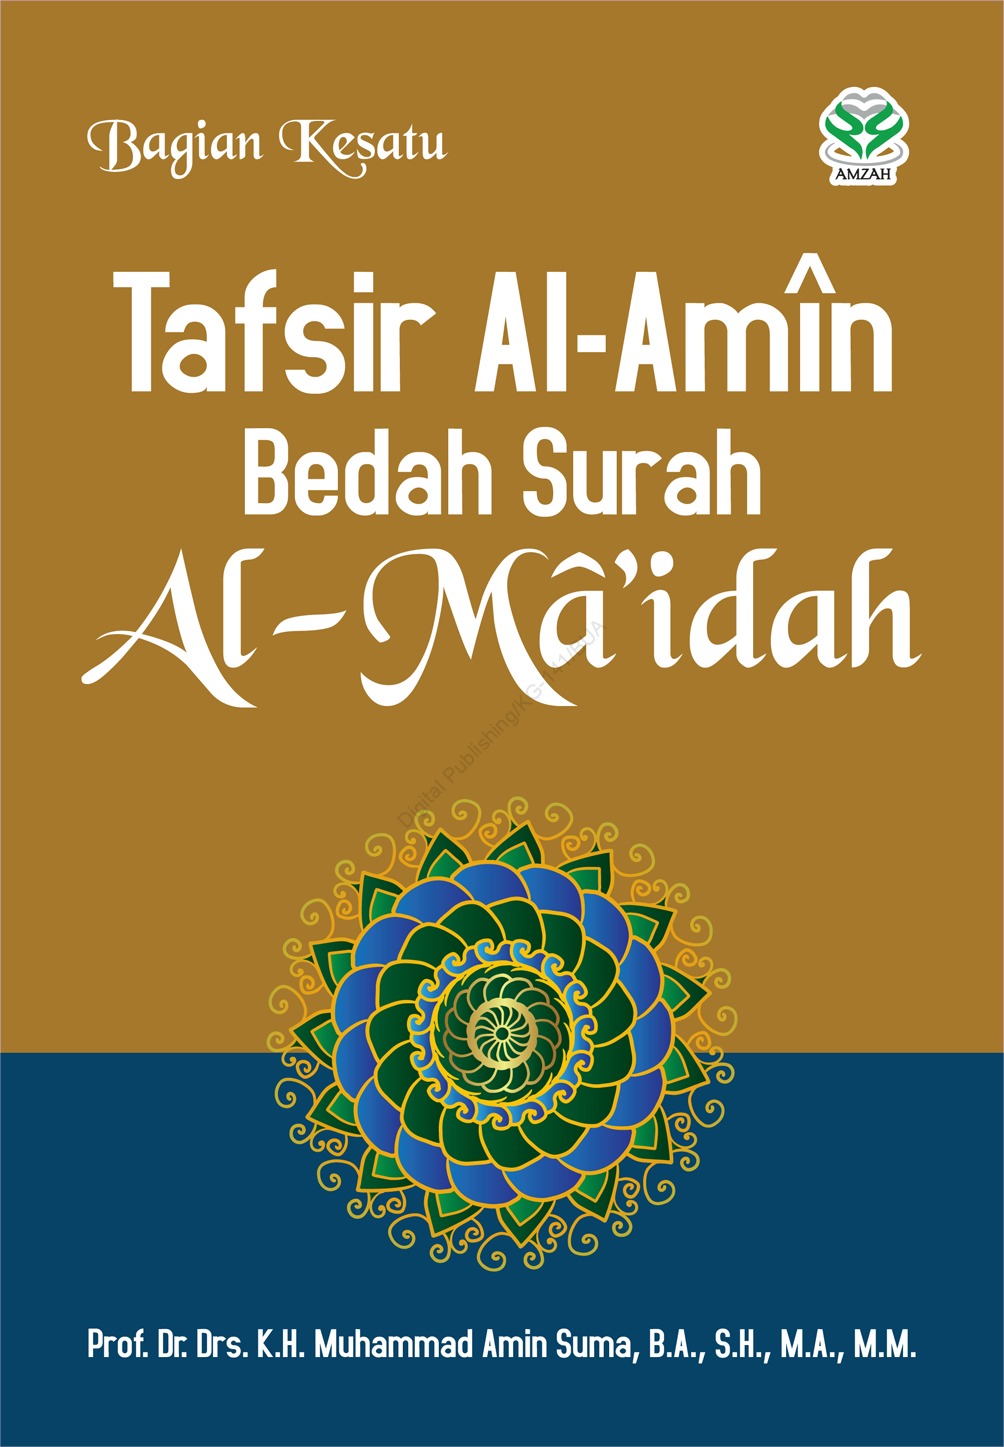 Tafsir Al-Amin bedah surah Al-Ma'idah - bagian kesatu